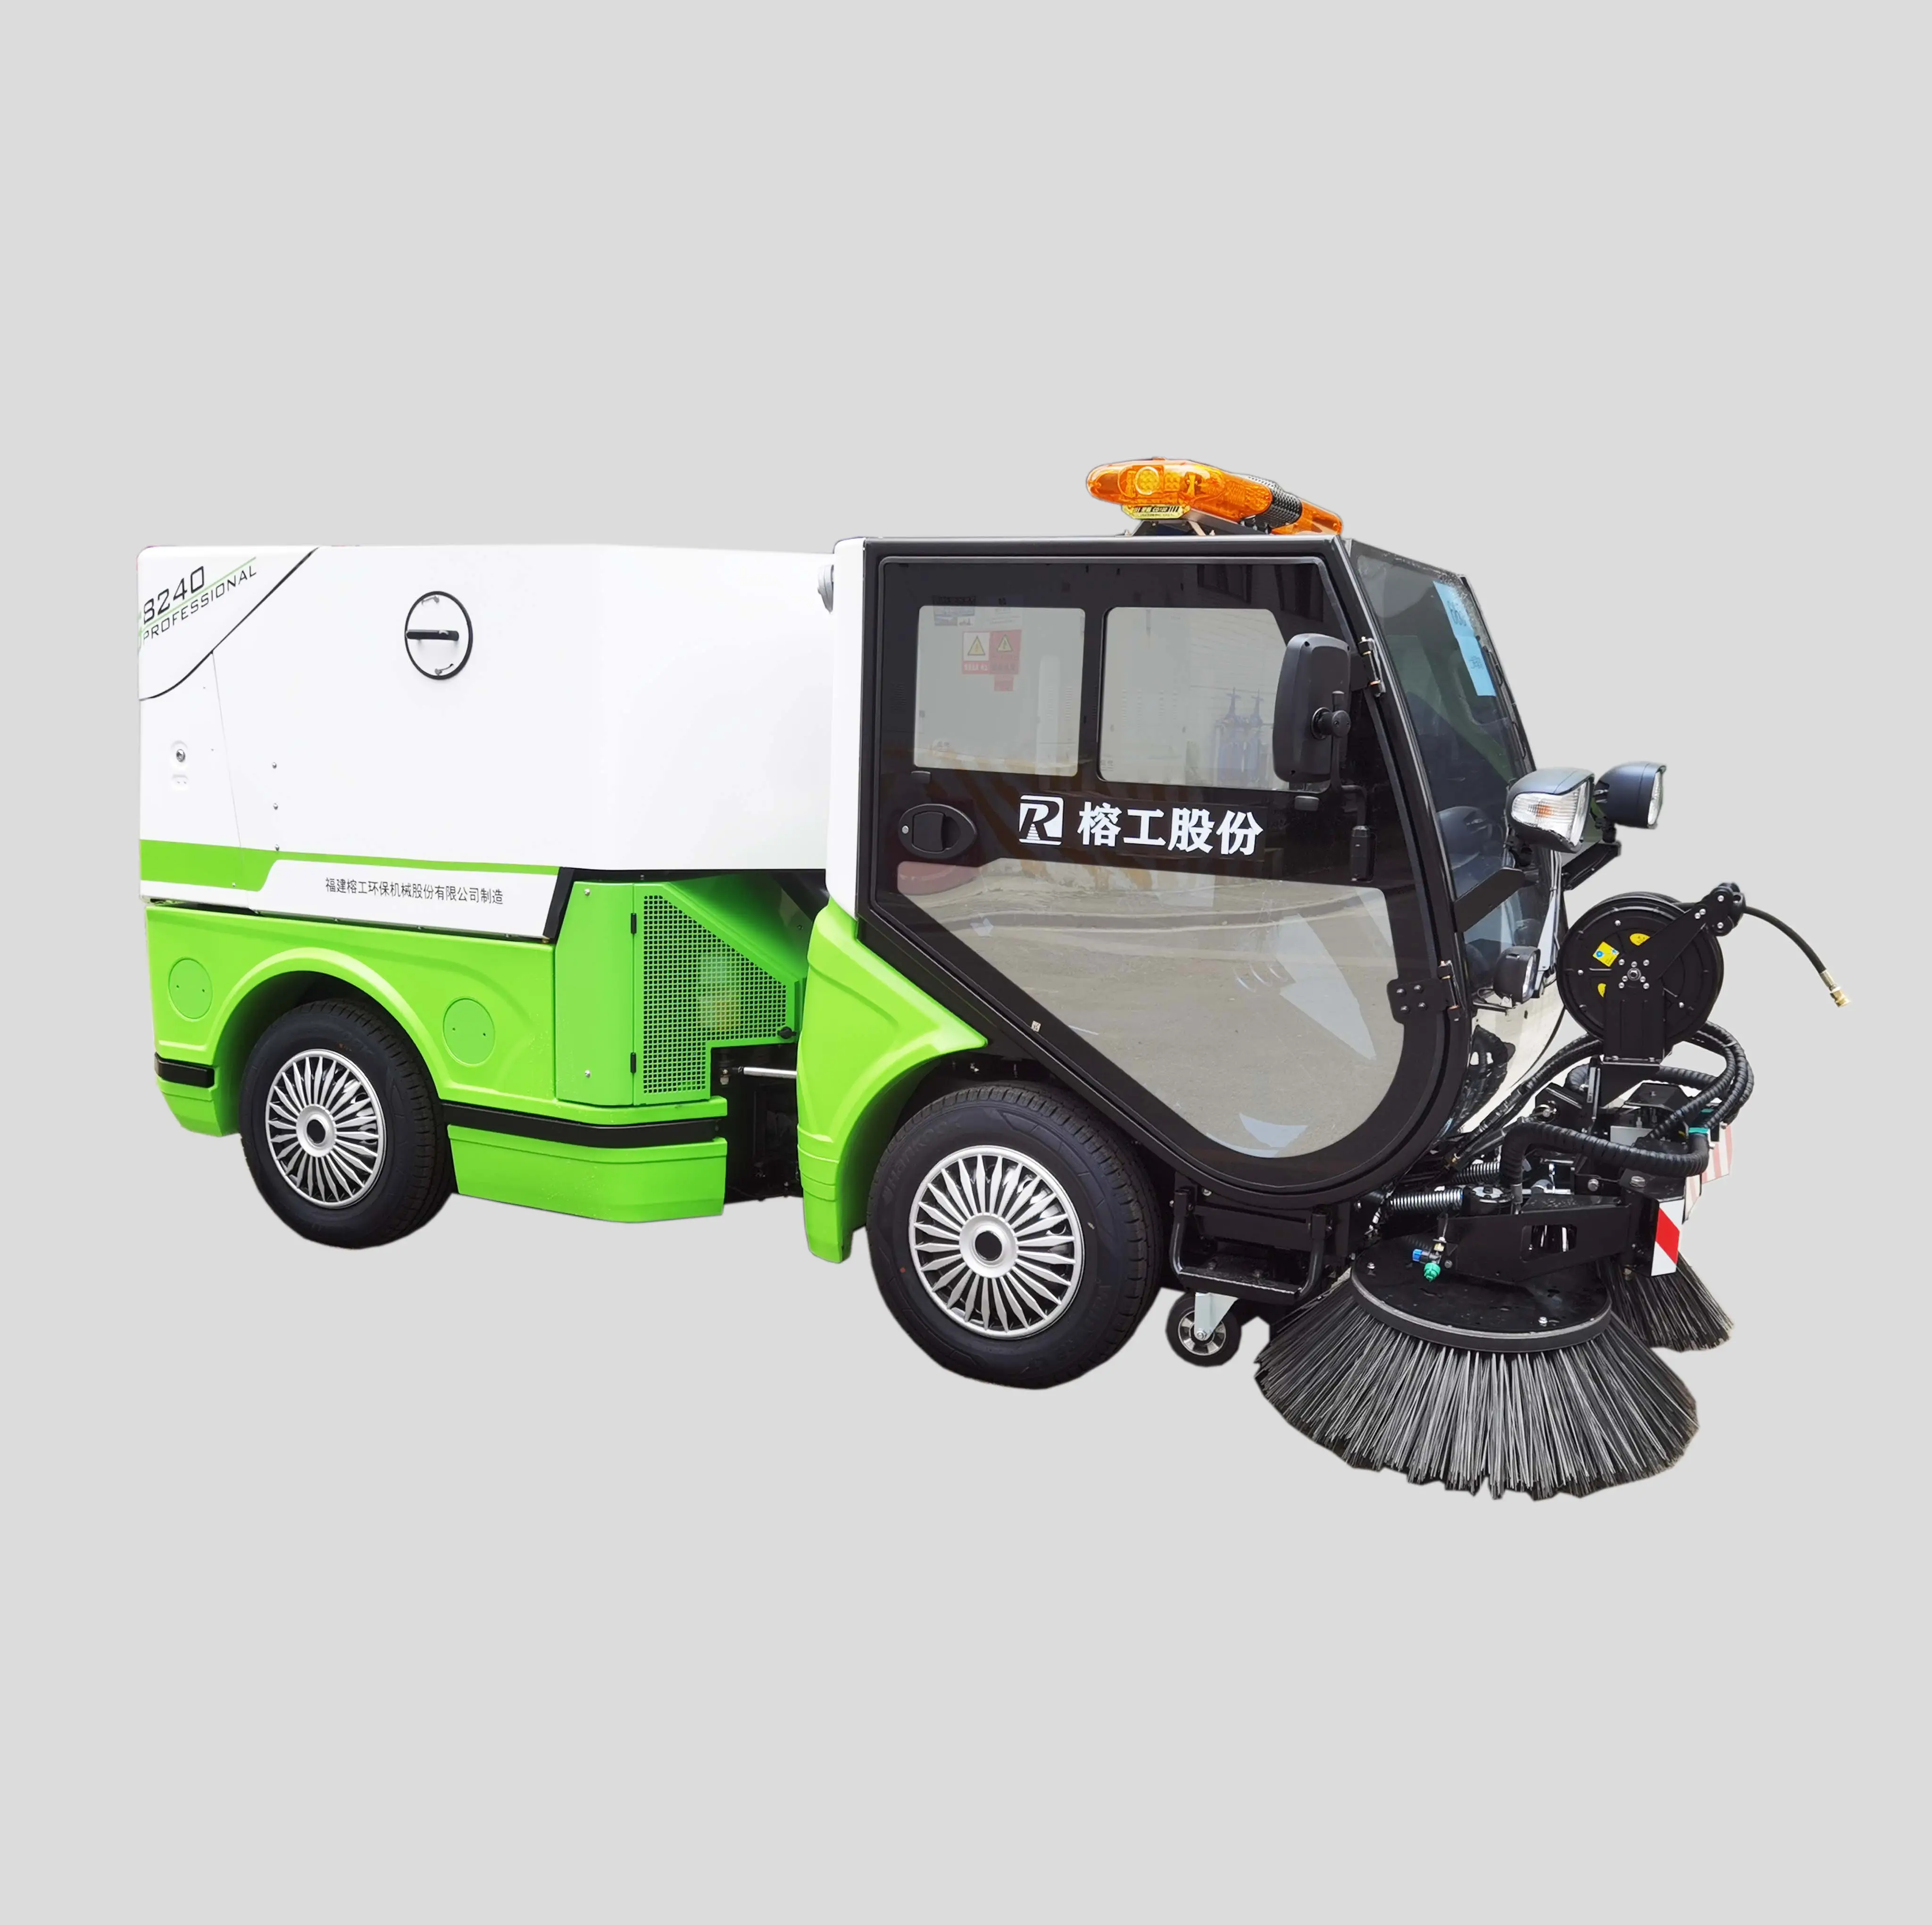 Machine de nettoyage municipale balayeuse à feuilles électrique balayeuse de voirie électrique camions sur le marché meilleure petite balayeuse